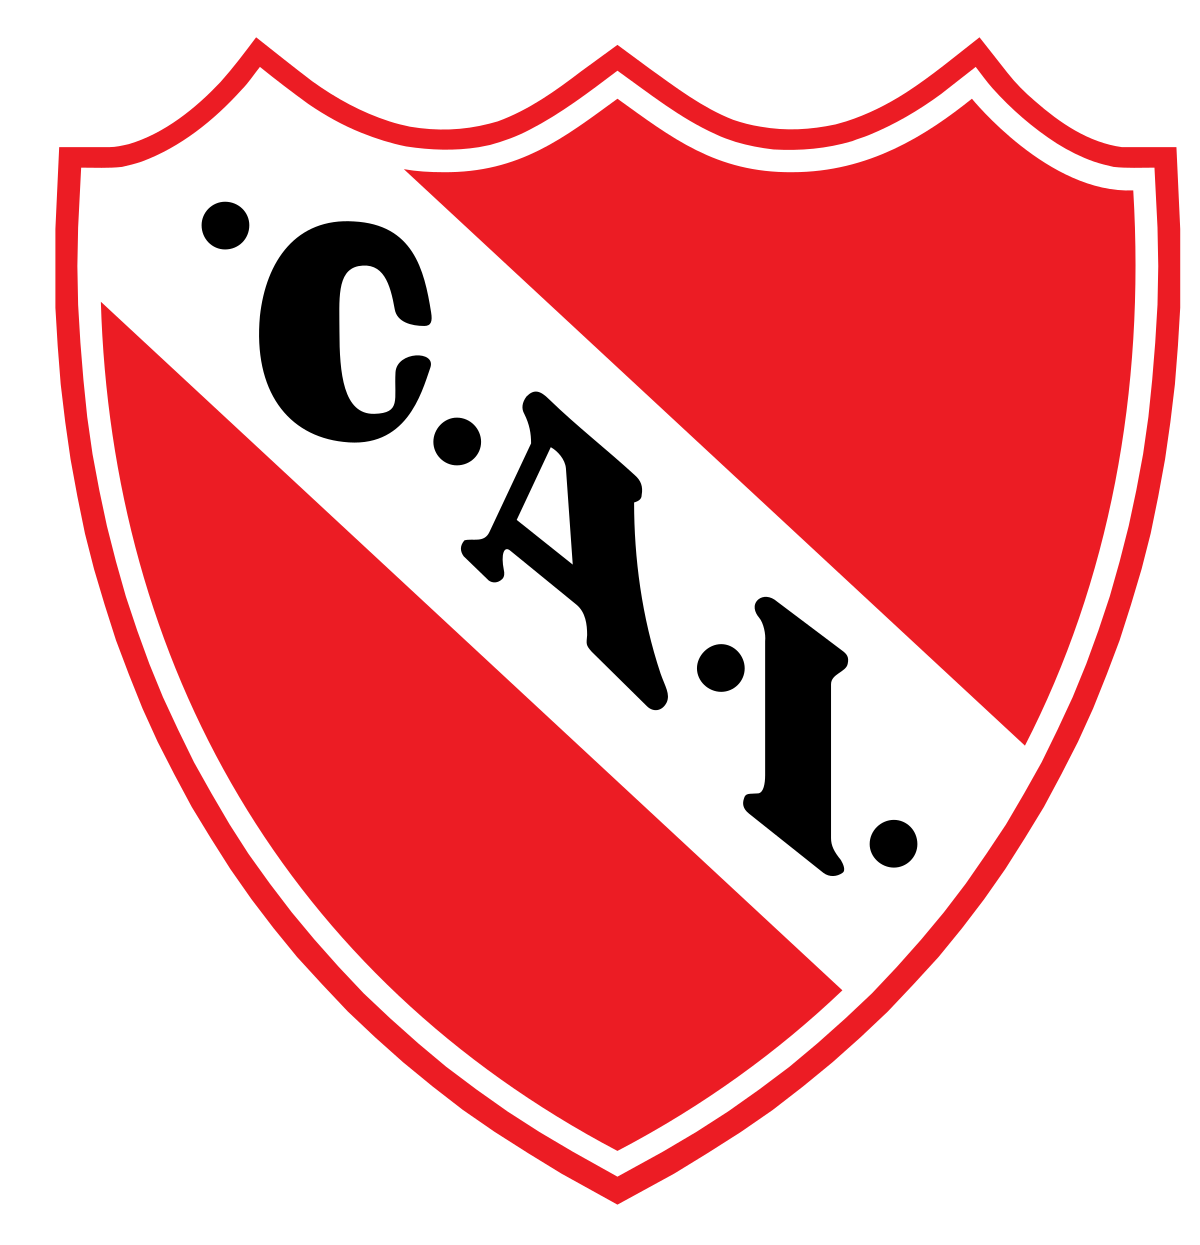 Independiente Chivilcoy logo